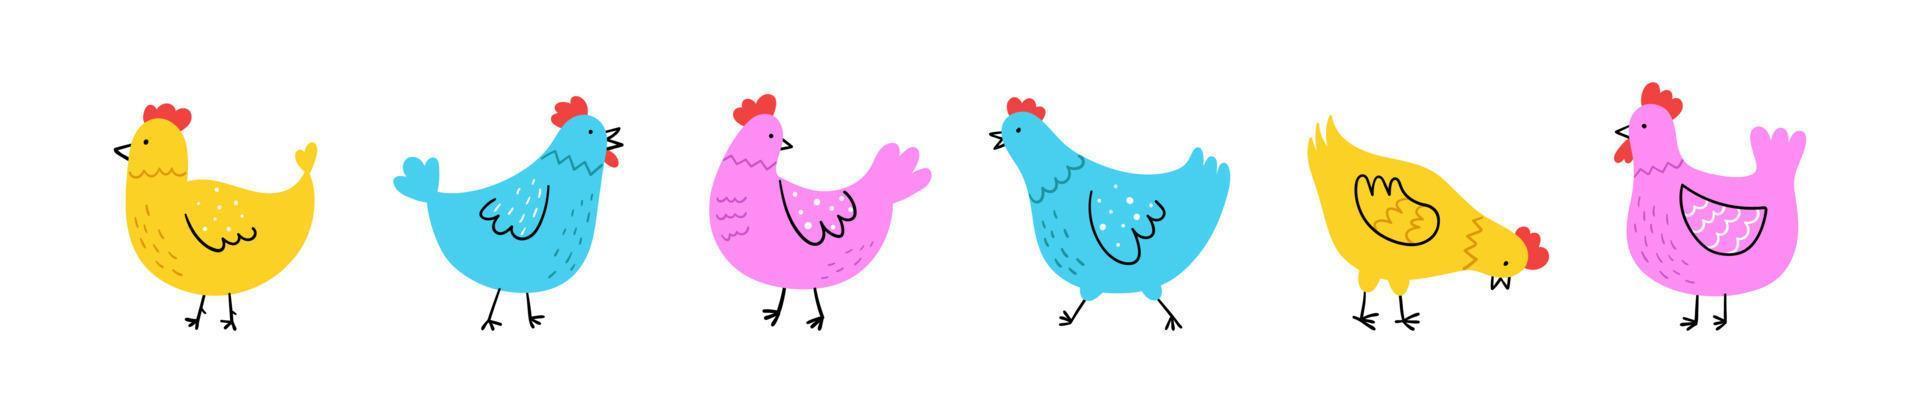 juego de pollo lindo dibujado a mano. estilo de dibujo de fideos. banner horizontal con divertidas aves domésticas. concepto de granja y aves de corral. ilustración vectorial sencilla. vector